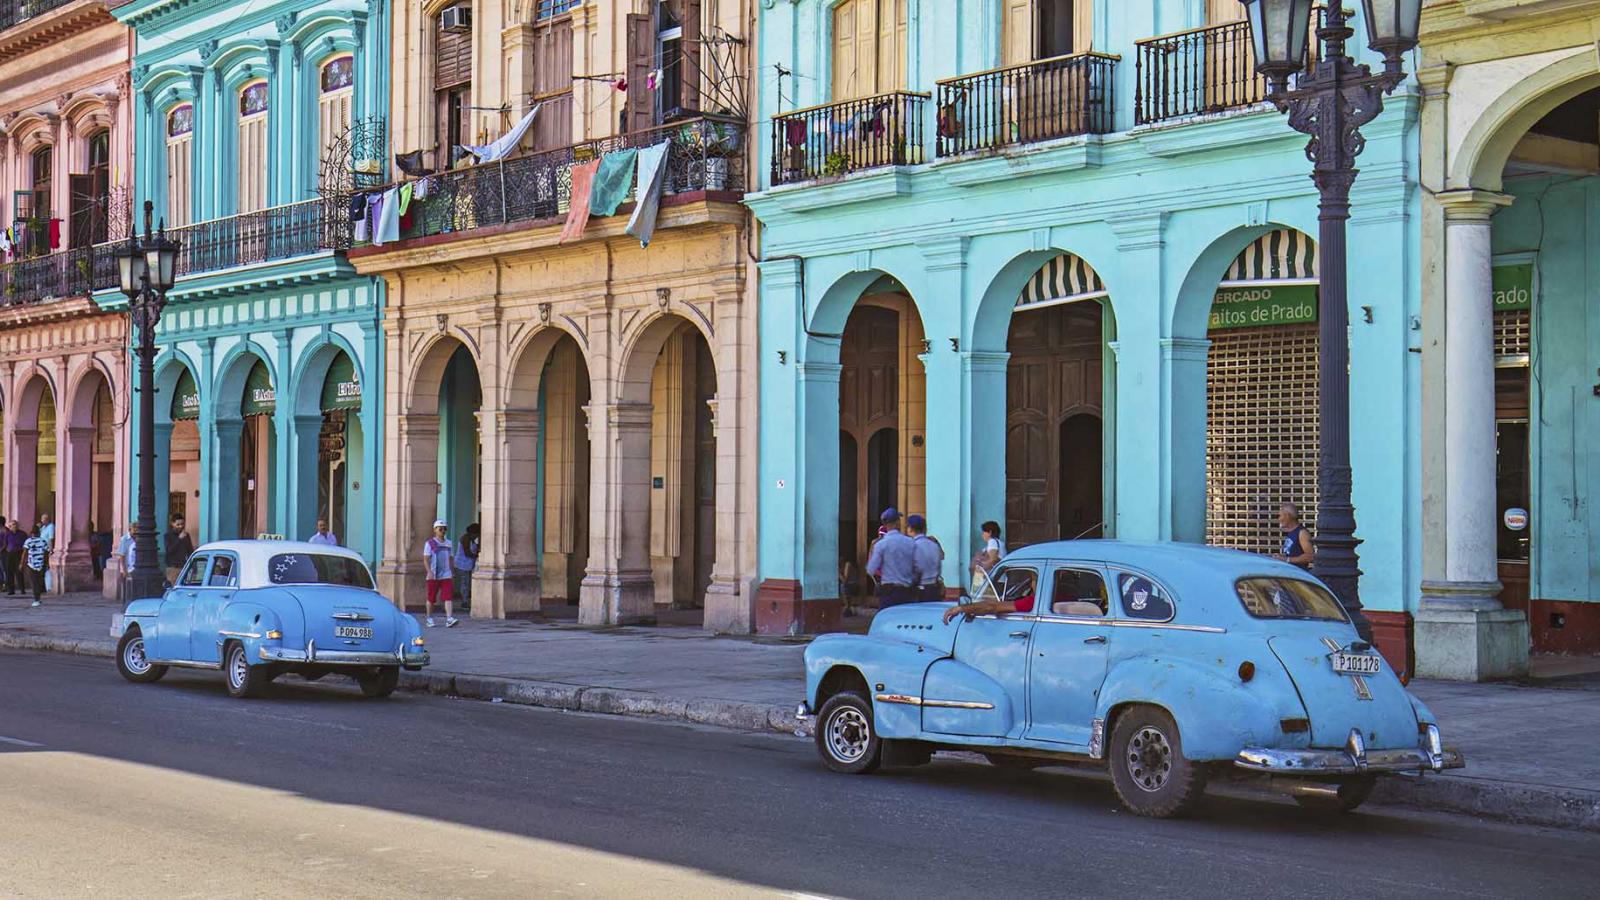 Portfolio: Past versus future in Cuba